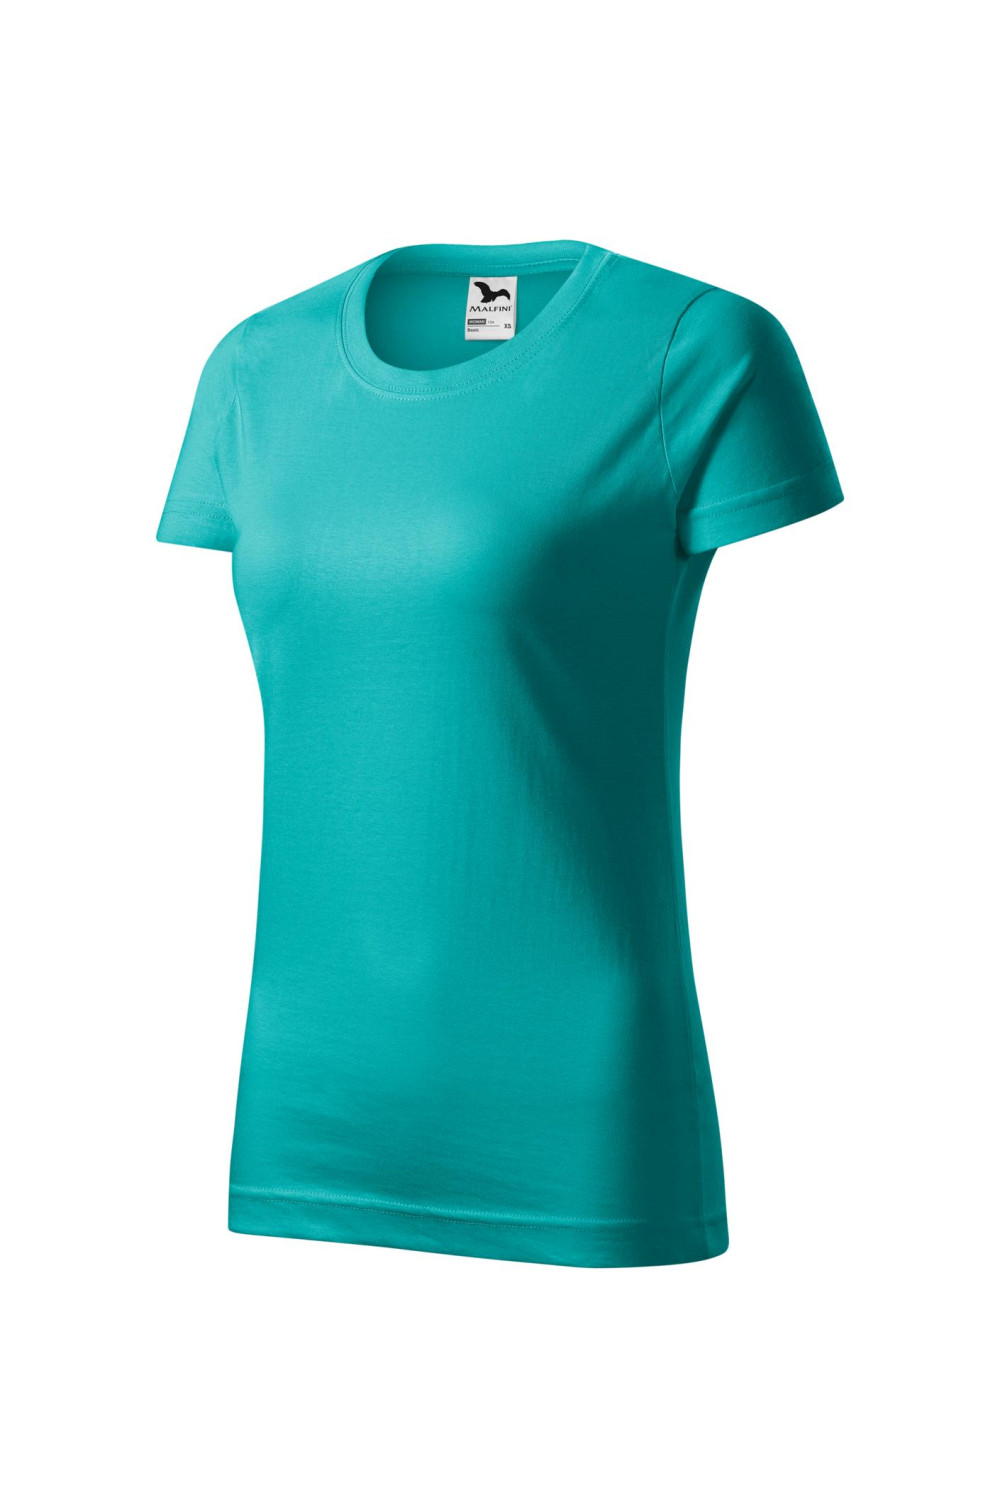 BASIC 134 MALFINI Koszulka damska 100% bawełna t-shirt szmaragdowy